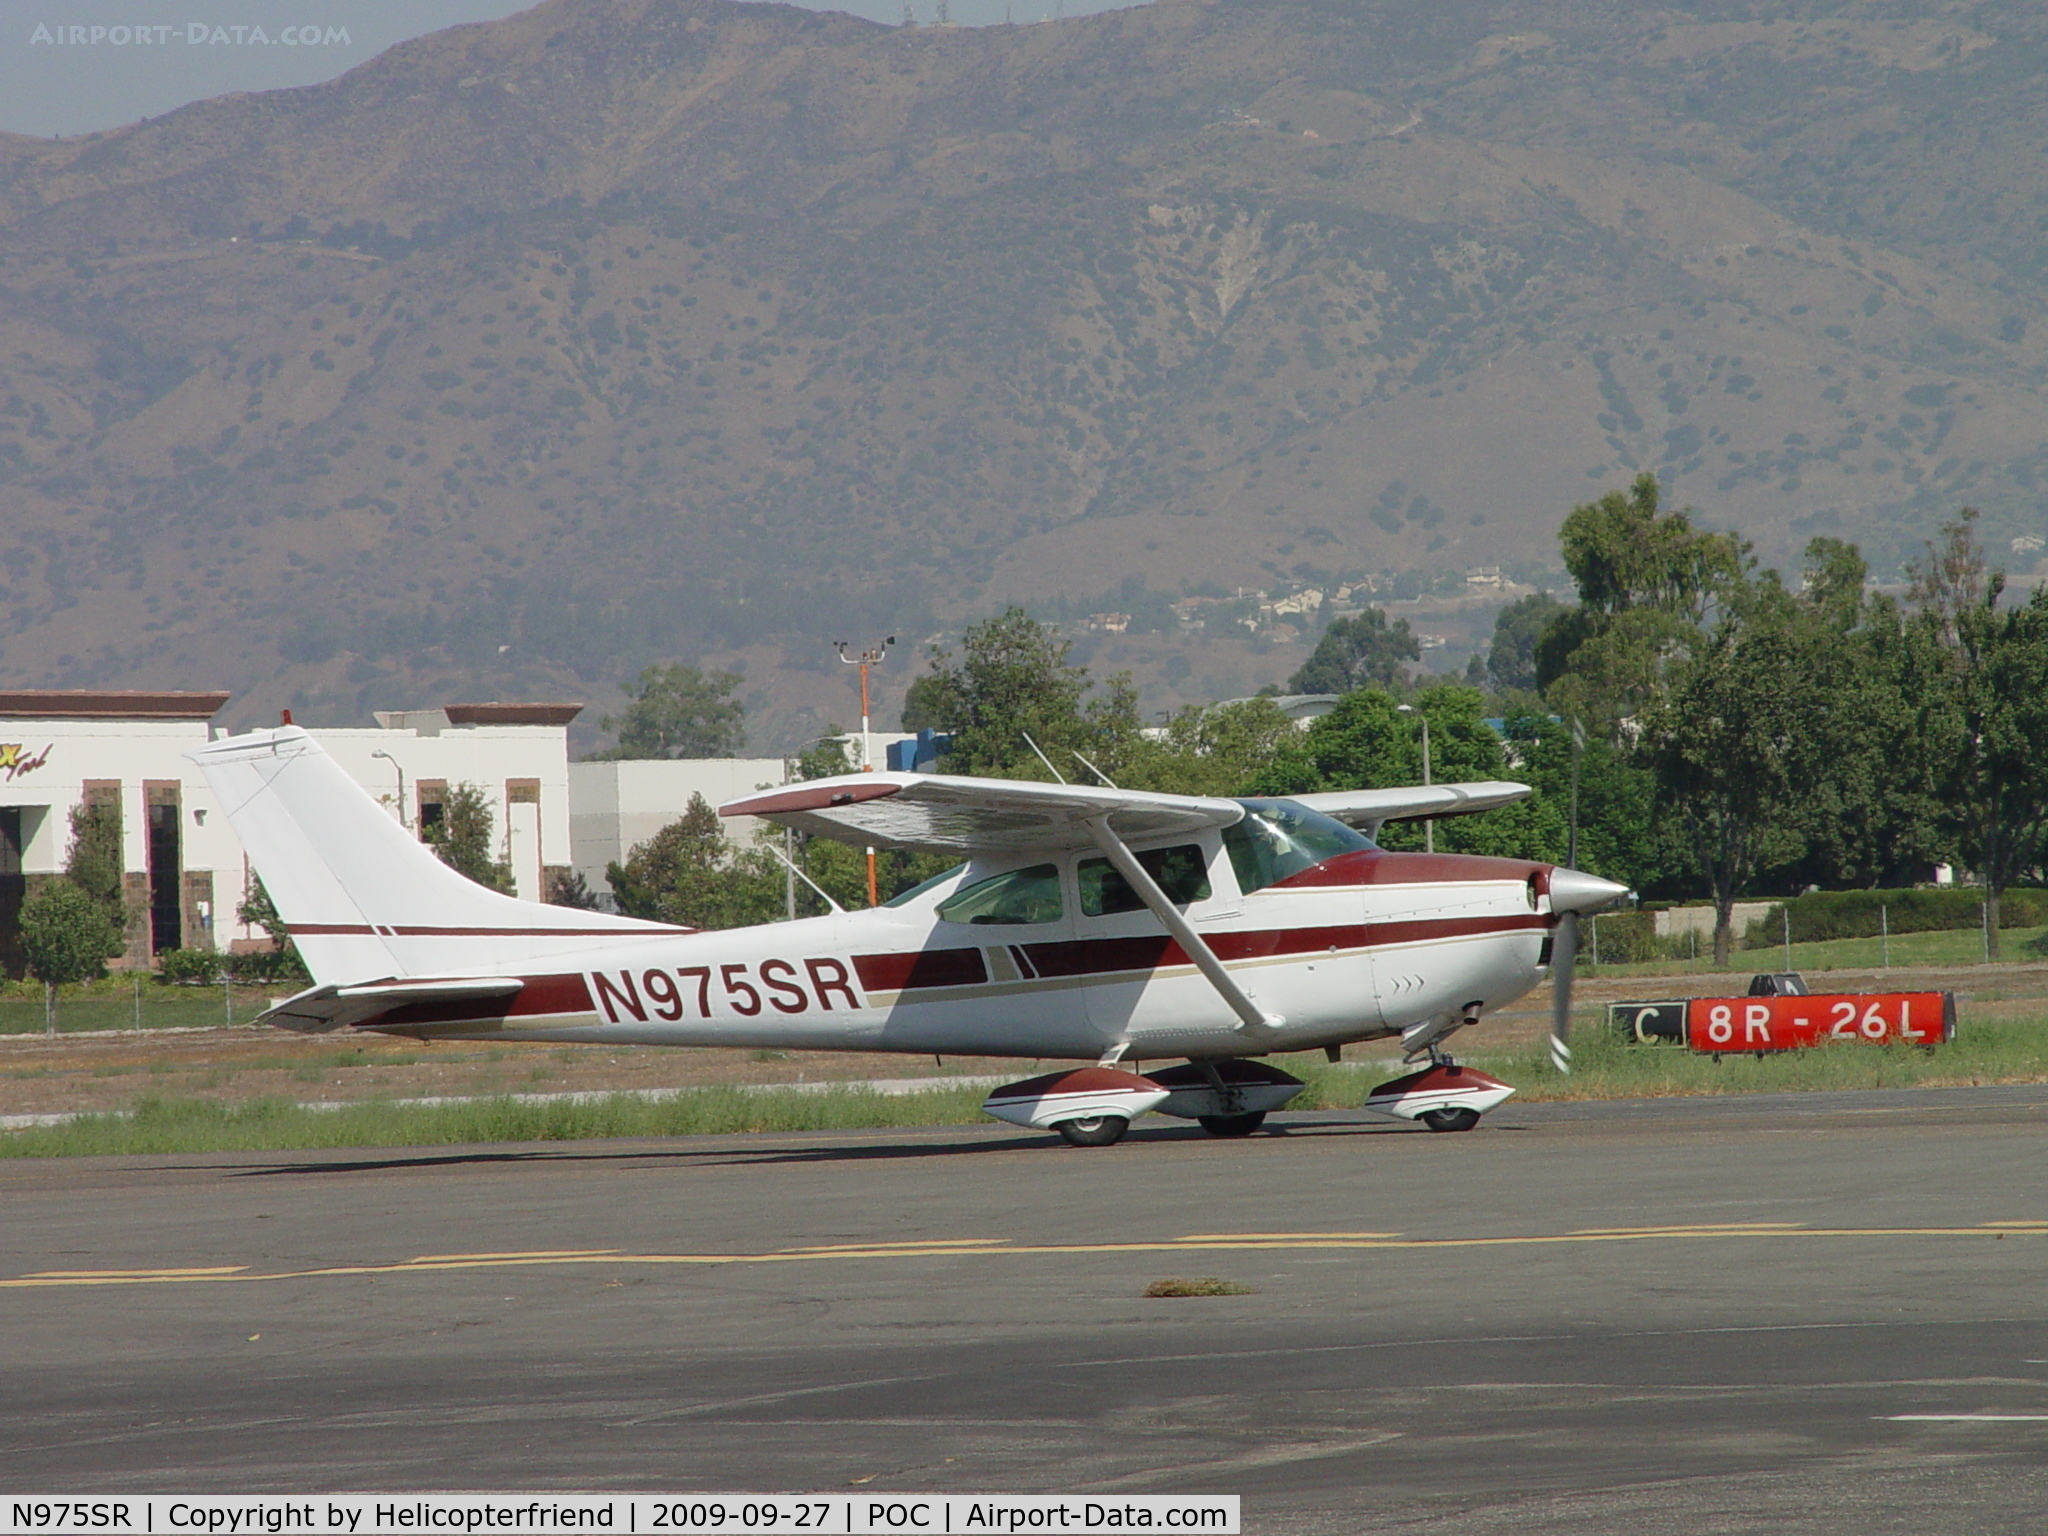 N975SR, 1968 Cessna 182L Skylane C/N 18258964, Taxiing to Runway 26L